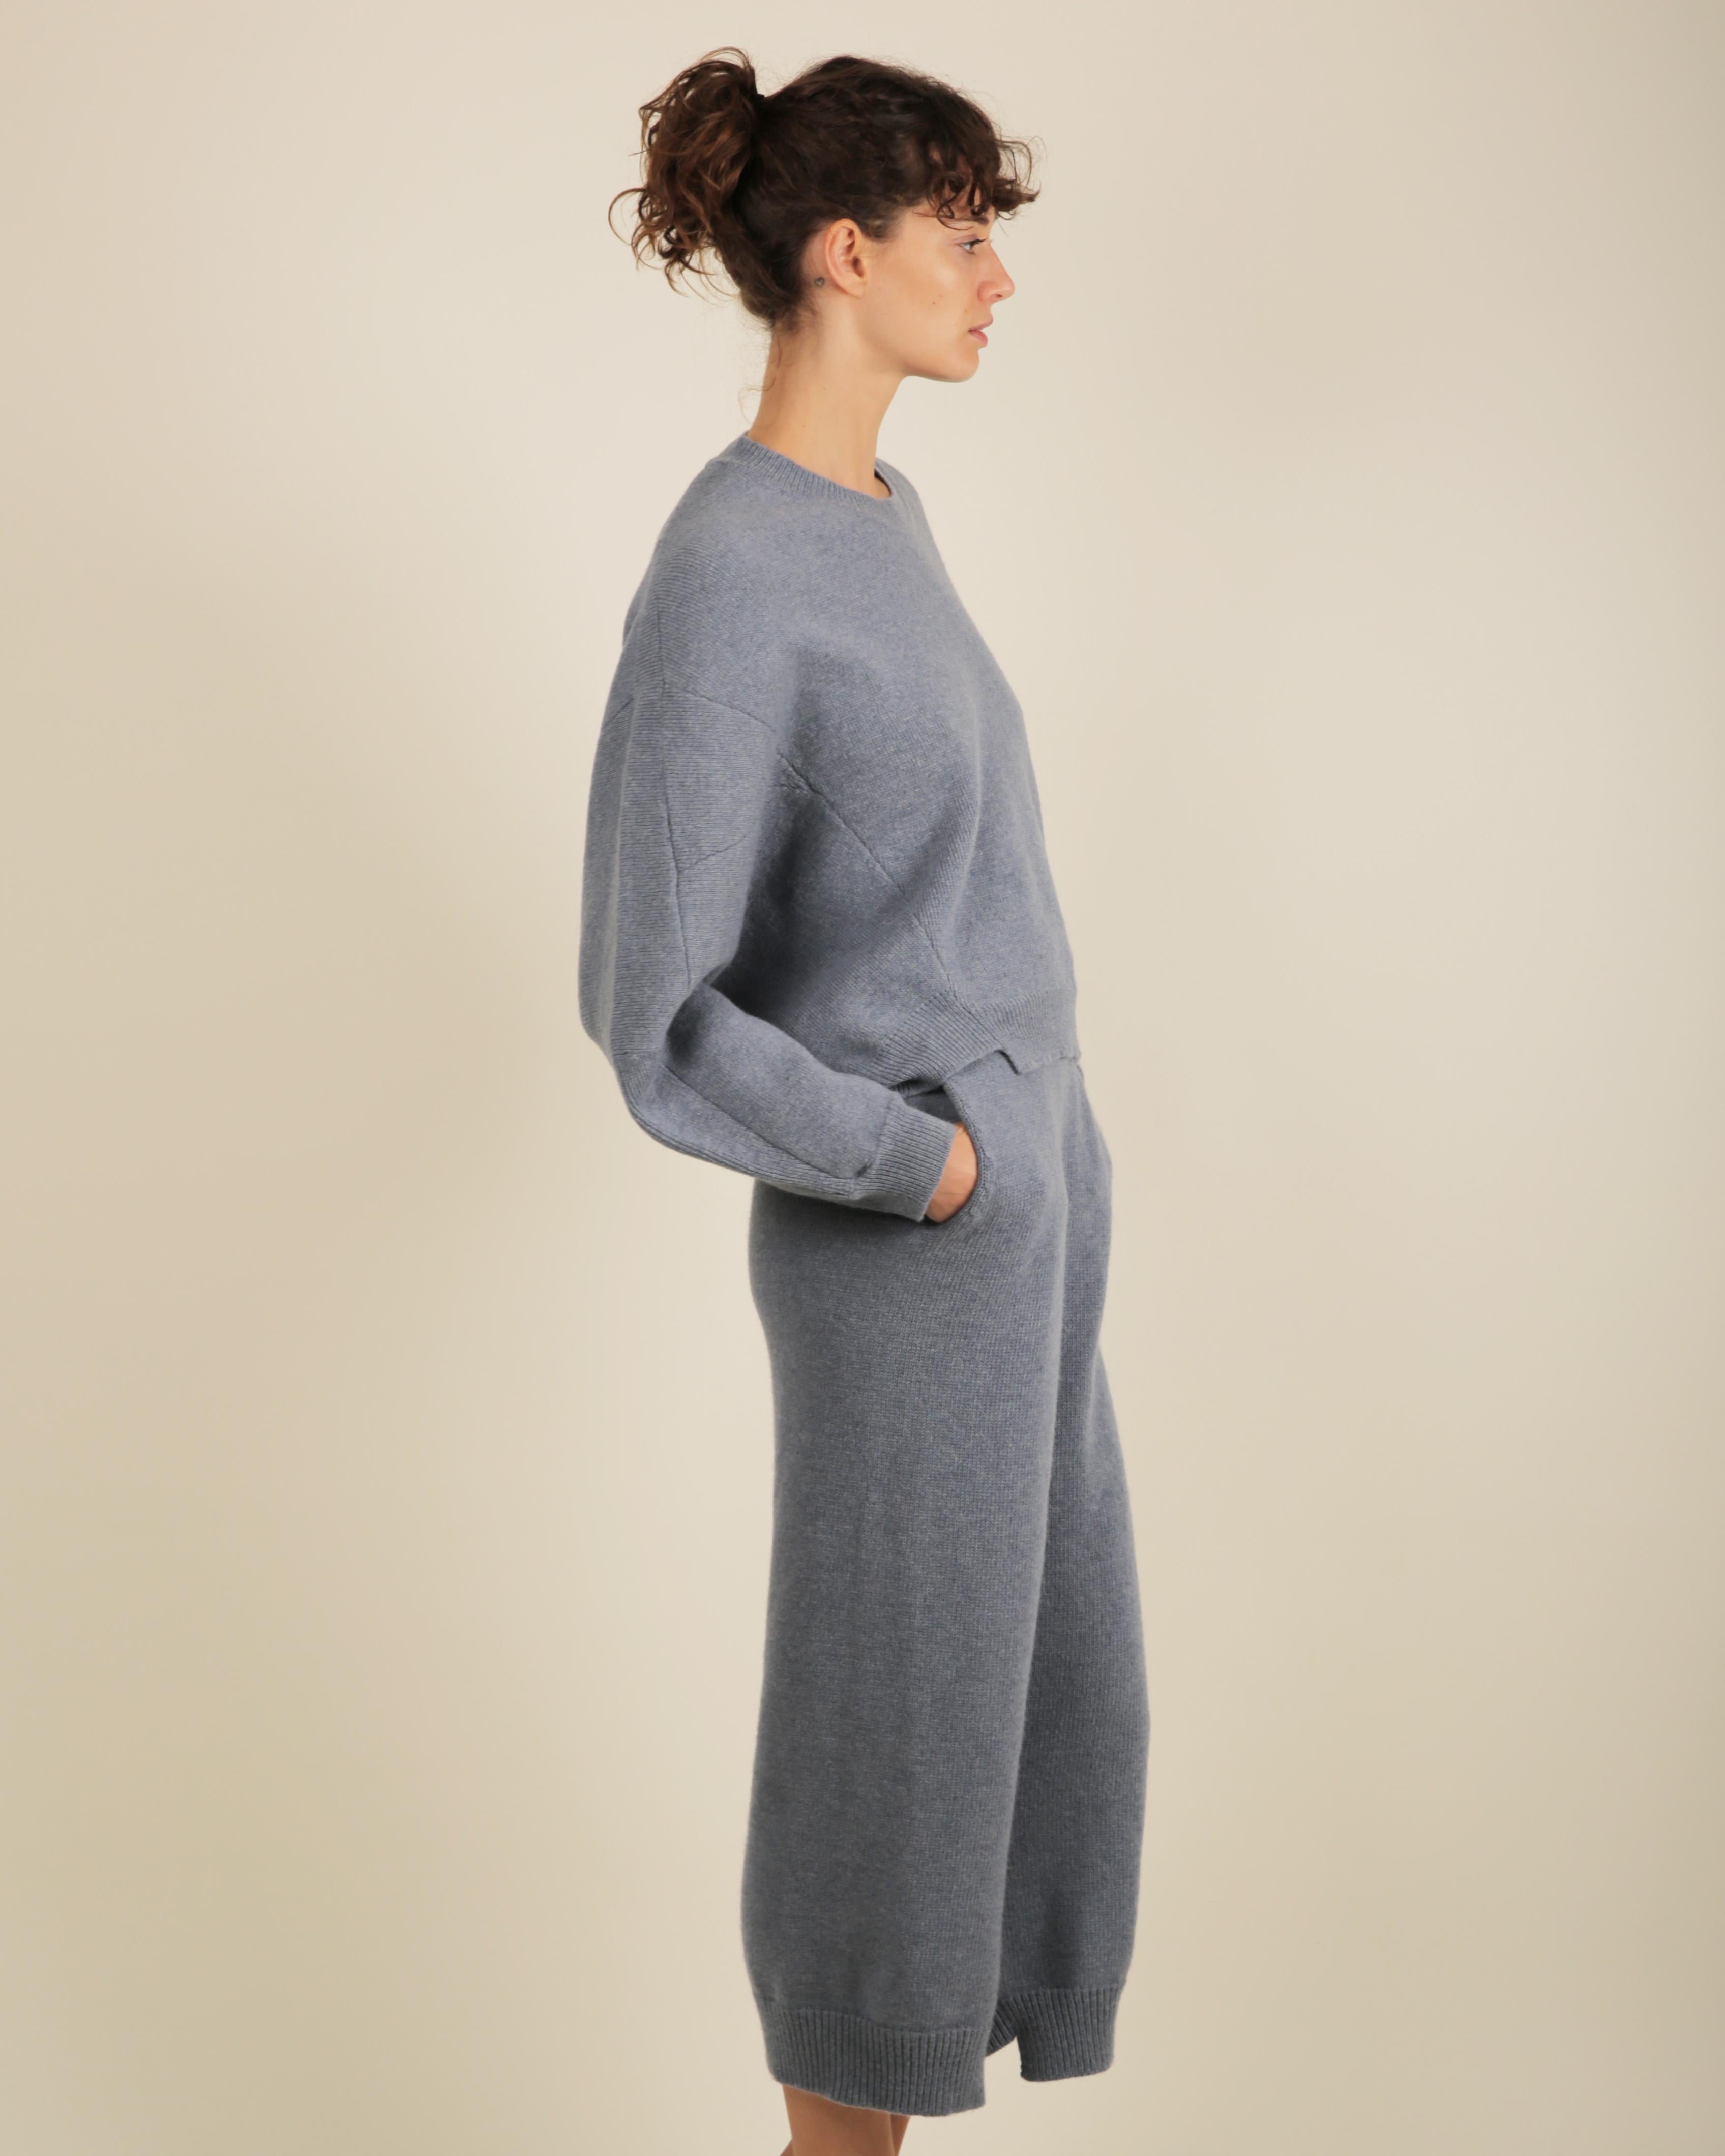 Stella McCartney Fall18 blue oversized wool alpaca matching sweater dress pants For Sale 7